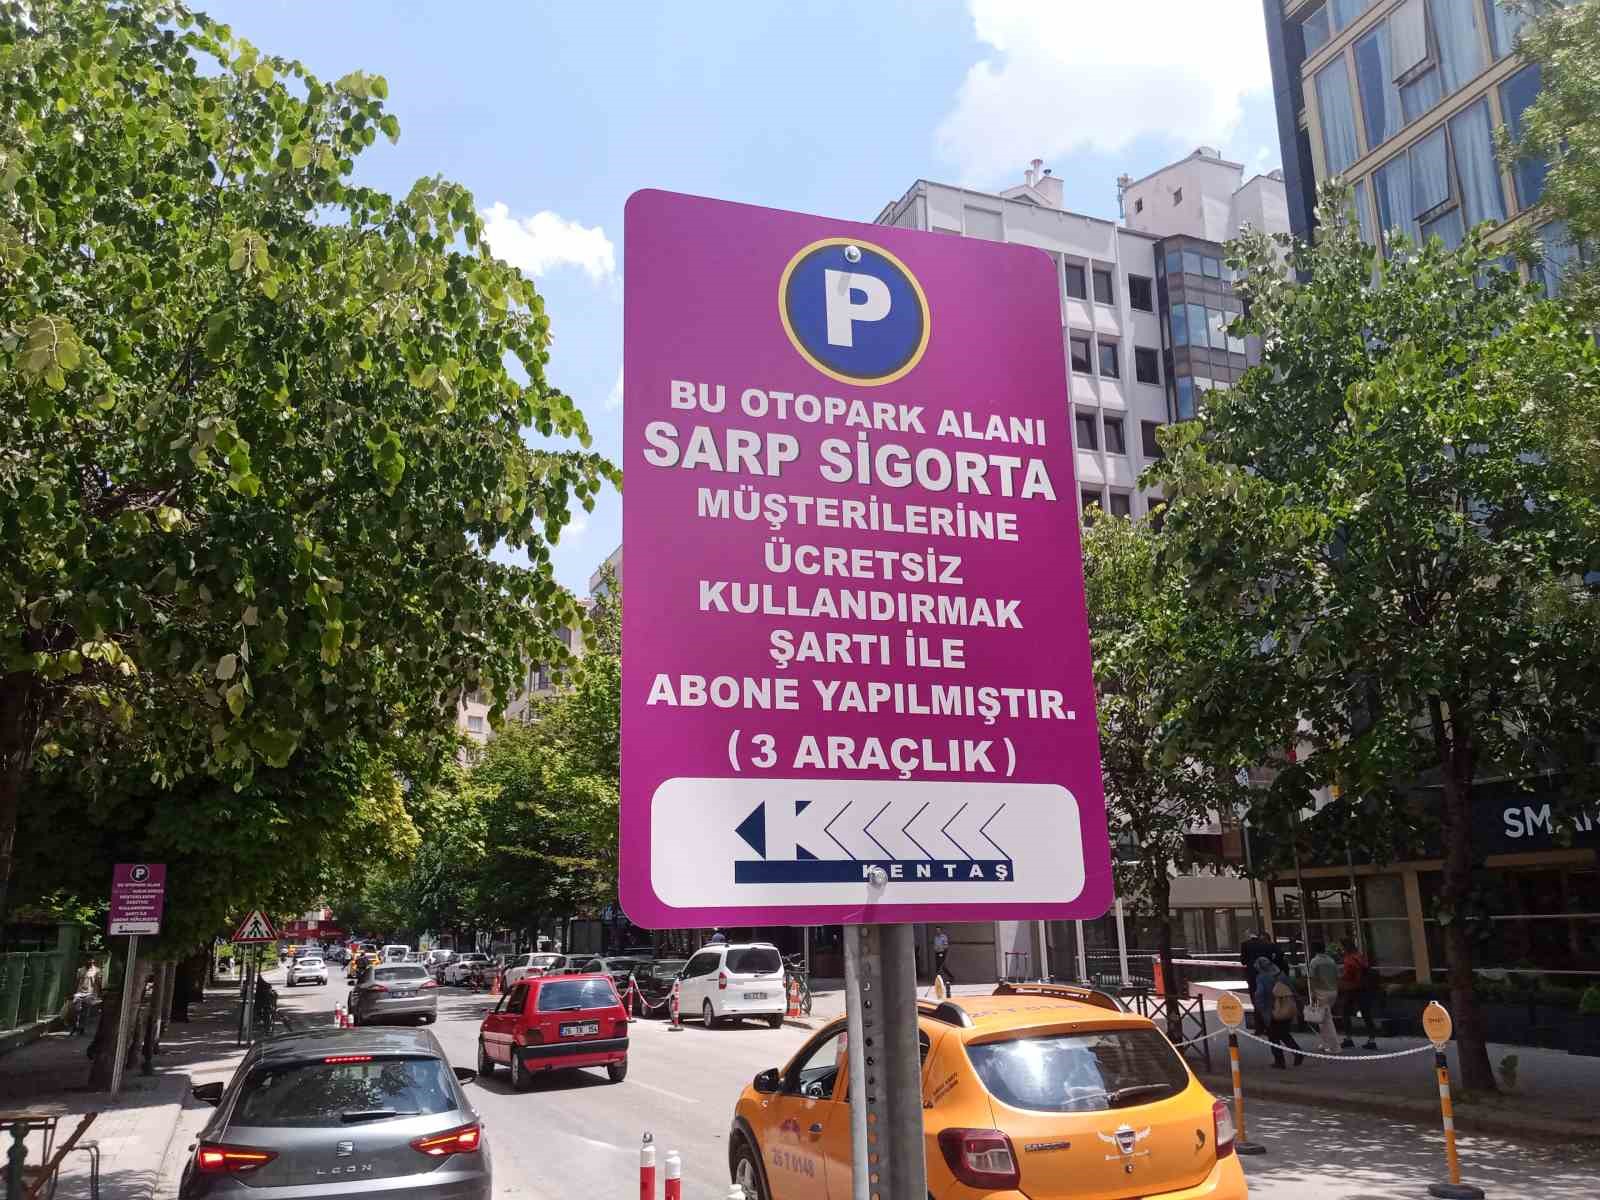 Eskişehir Büyükşehir Belediyesi’nin otopark uygulamasına tepki